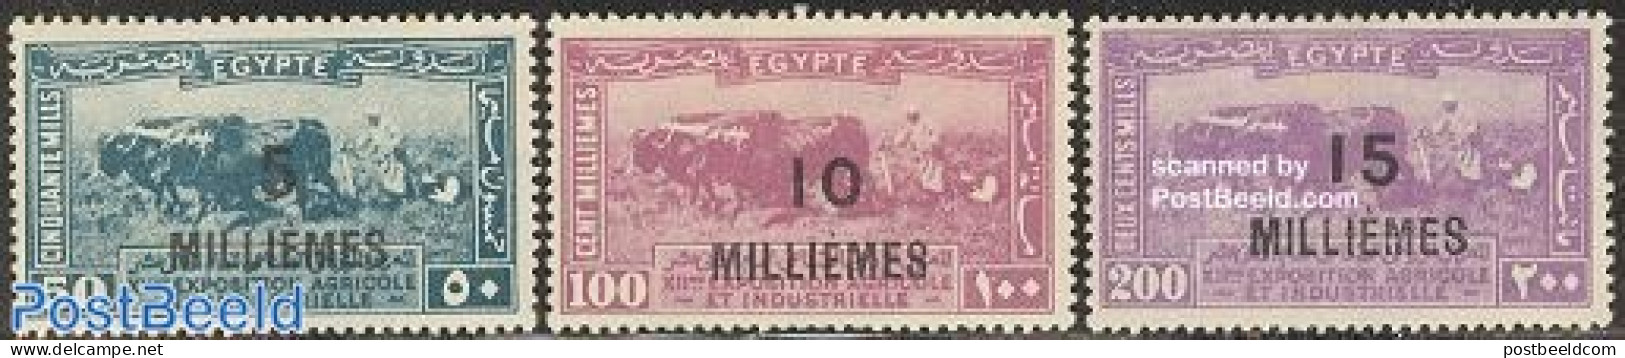 Egypt (Kingdom) 1926 Overprints 3v, Unused (hinged), Nature - Cattle - Nuovi